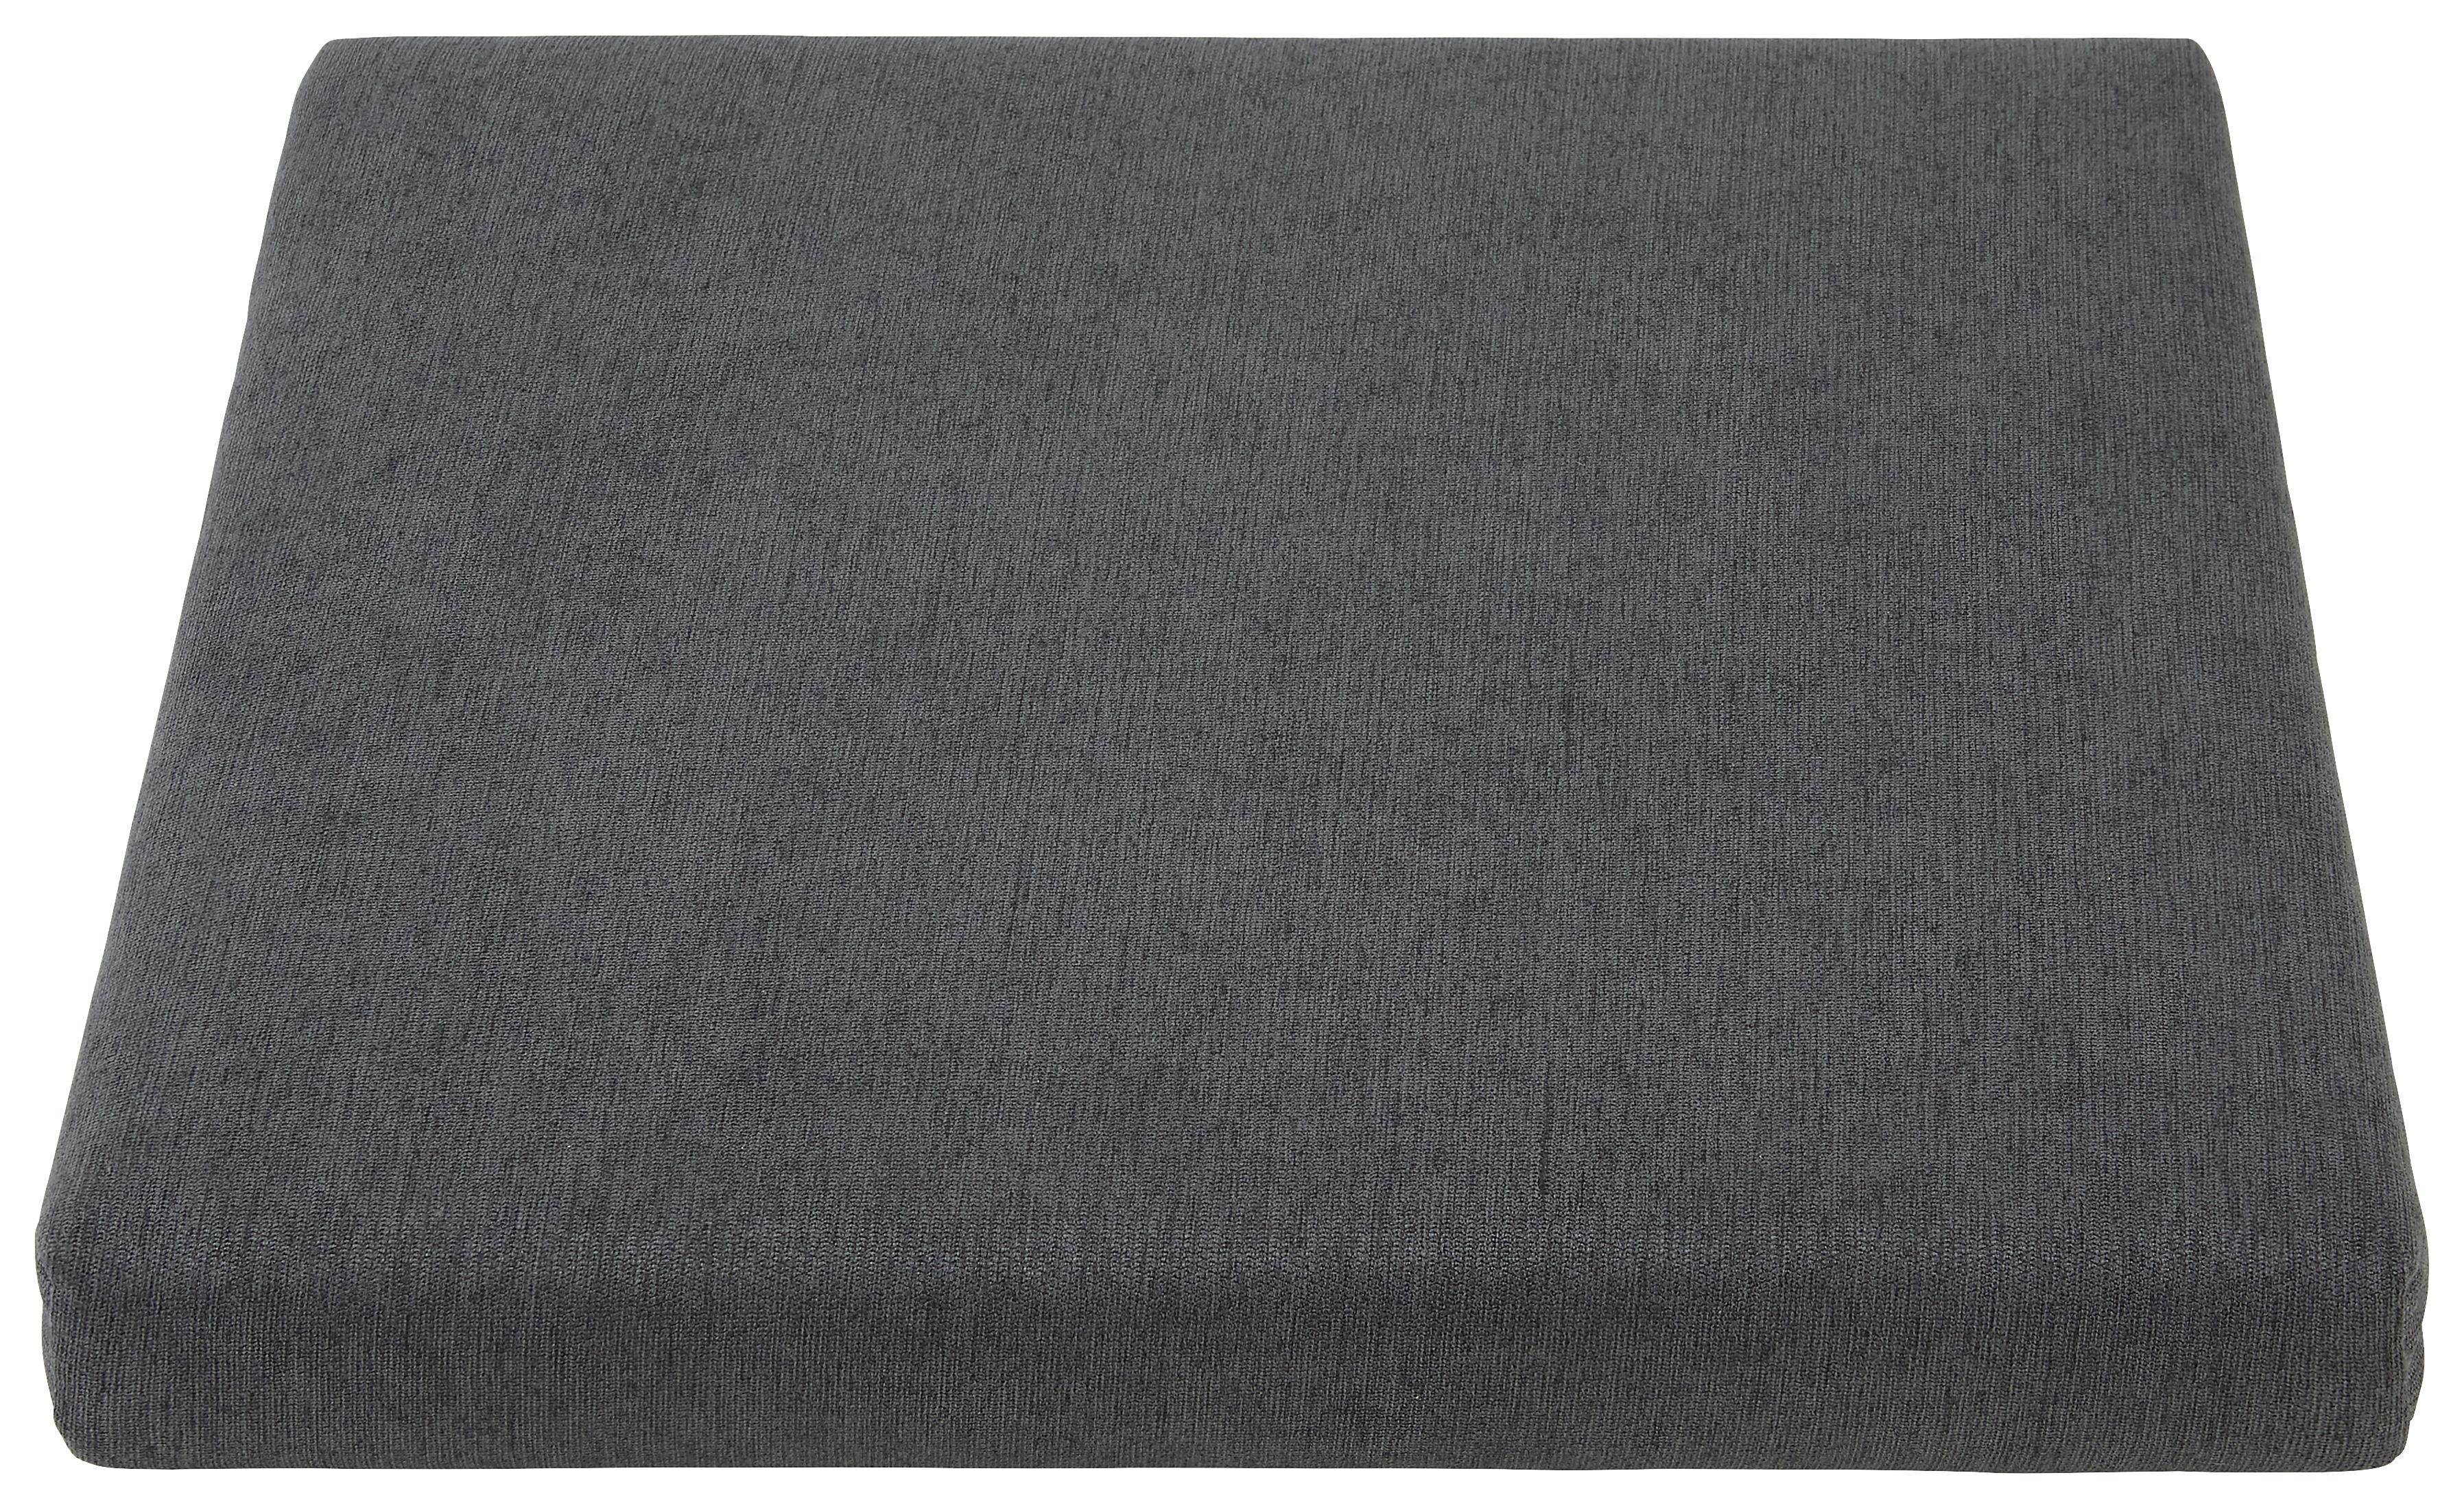 Klemmkissen Grau ca. 45x08x45cm - Grau, Textil (45/08/45cm) - Zandiara